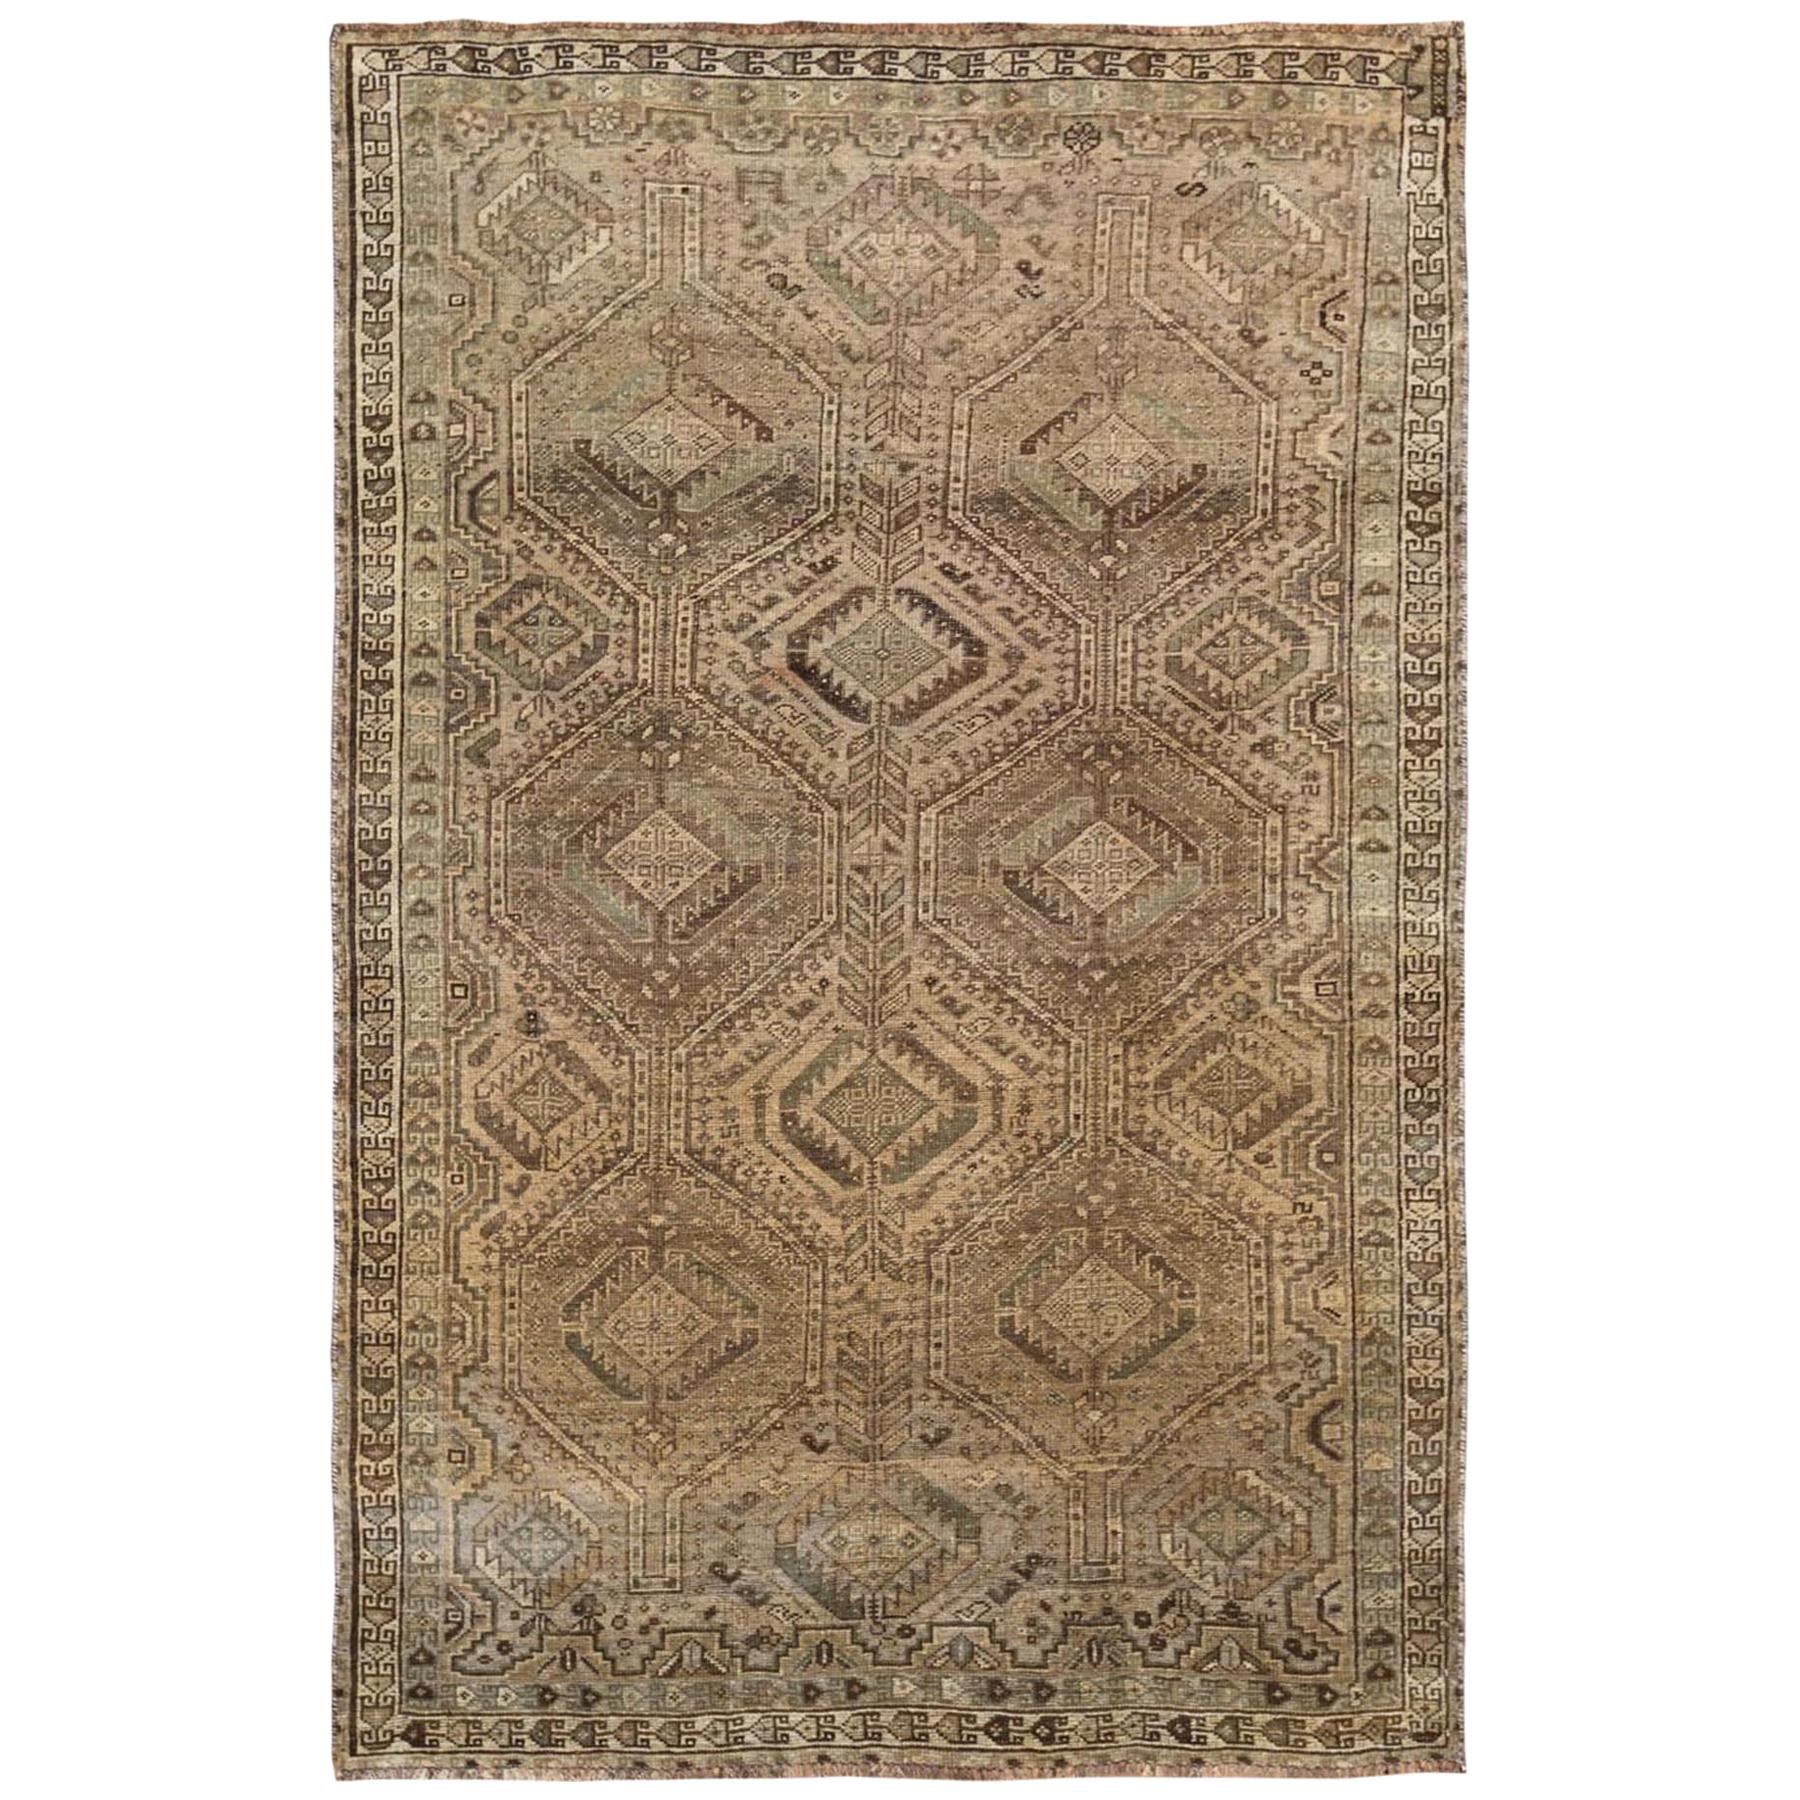 Semi Antique Brown Persian Shiraz Natural Colors Handmade Bohemian Wool Rug